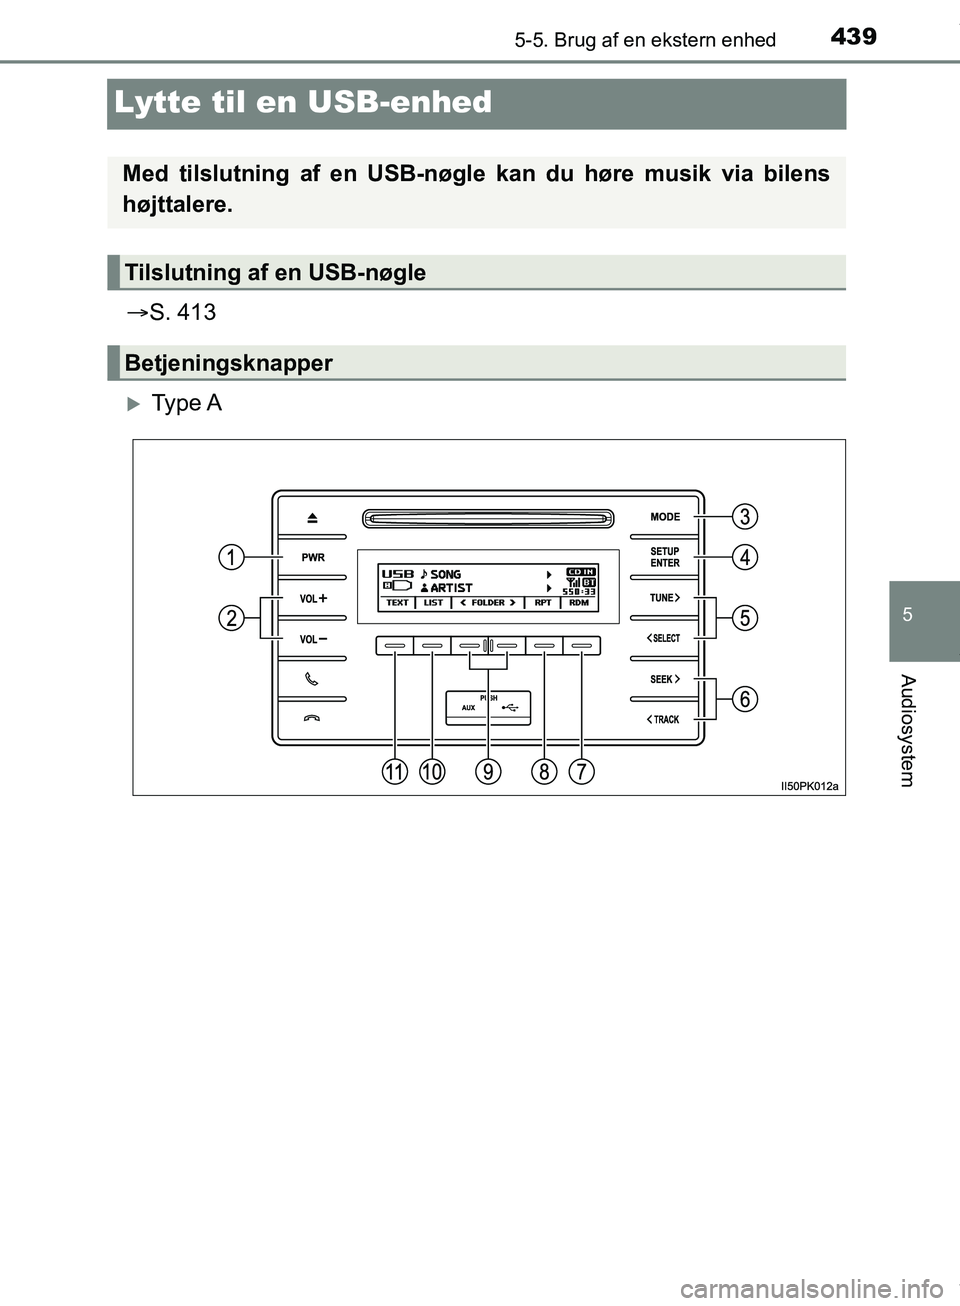 TOYOTA HILUX 2018  Brugsanvisning (in Danish) 439
5
5-5. Brug af en ekstern enhed
Audiosystem
Hilux OM0K375DK
Lytte til en USB-enhed
S. 413
Ty p e  A
Med tilslutning af en USB-nøgle kan du høre musik via bilens
højttalere.
Tilslutning af